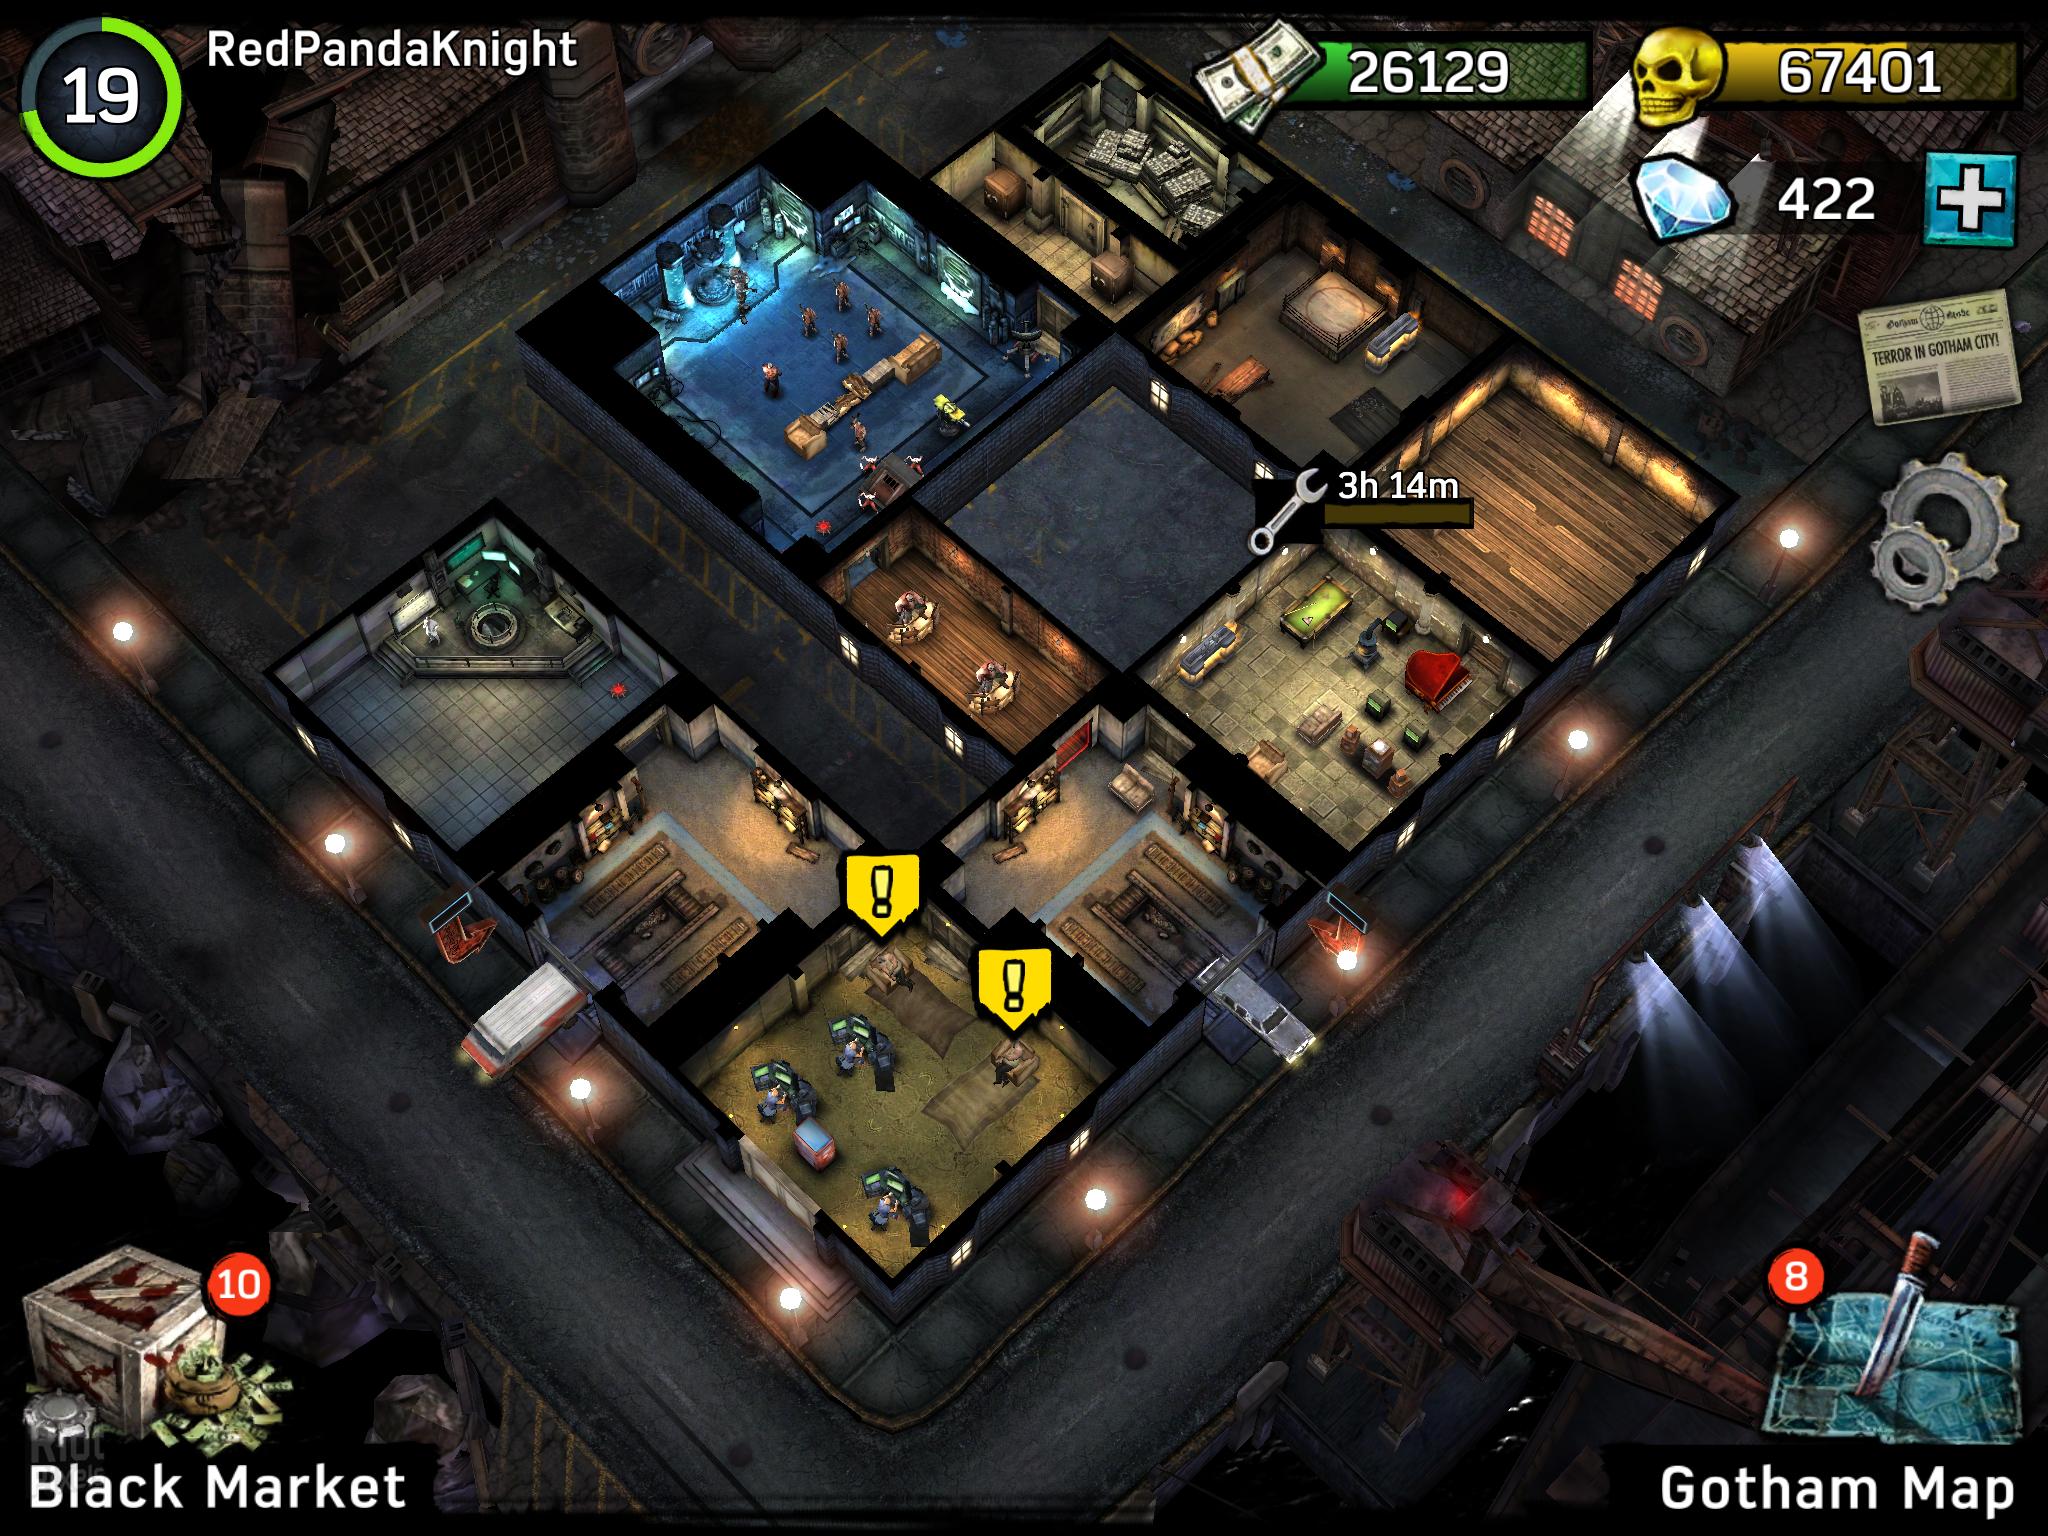 Batman: Arkham Underworld - game screenshots at Riot Pixels, images